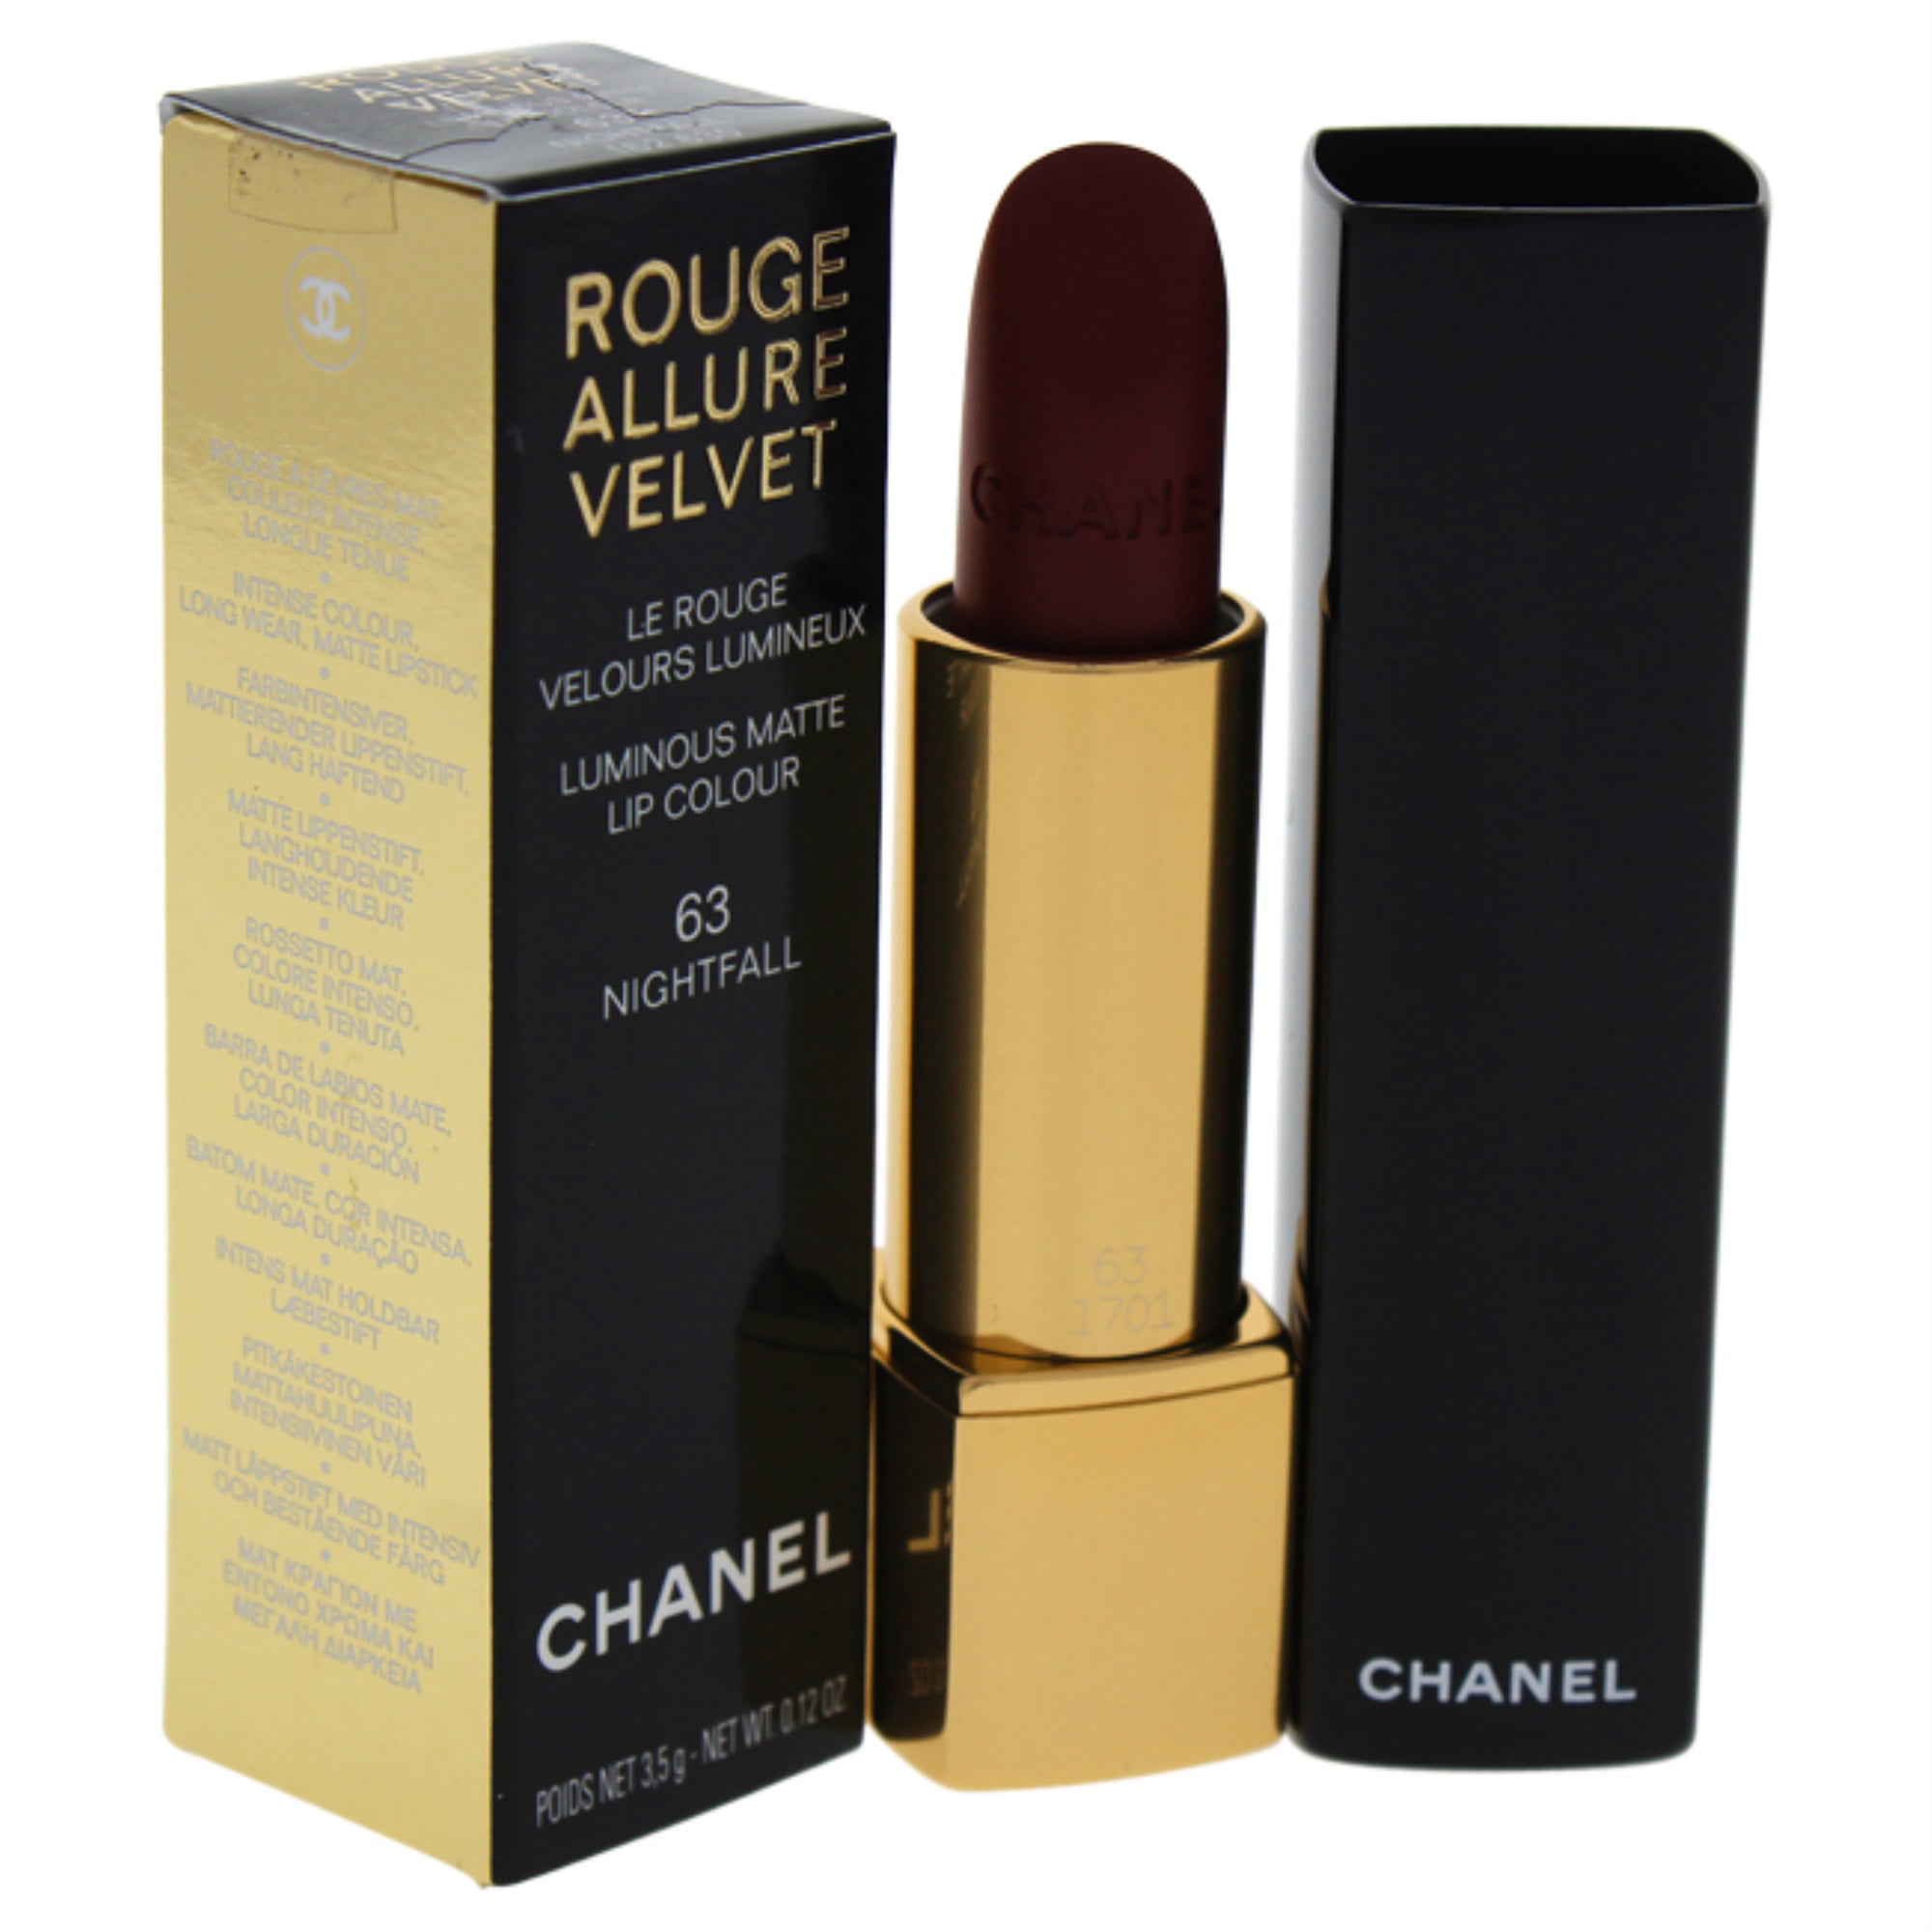 Rouge Allure Velvet Luminous Matte Lip Colour - # 63 Nightfall by Chanel  for Women - 0.12 oz Lipstick